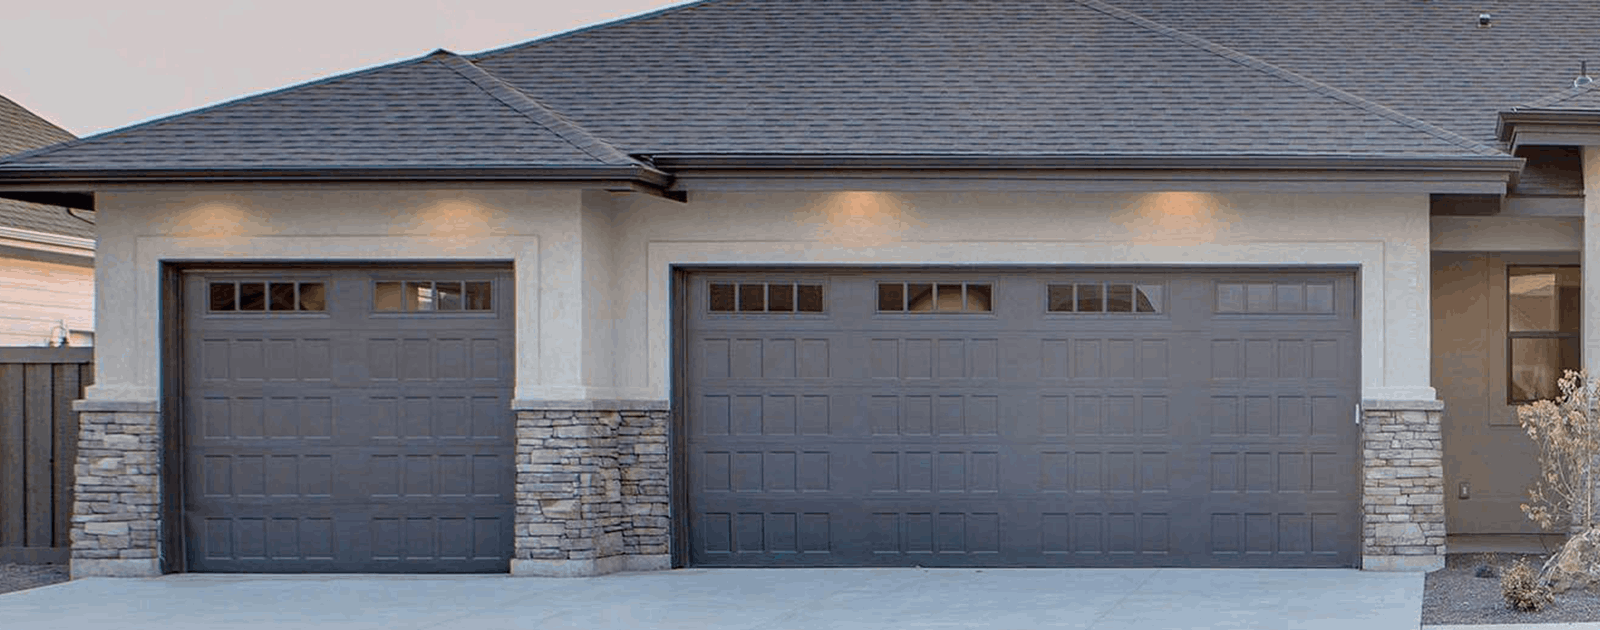 long grey garage door